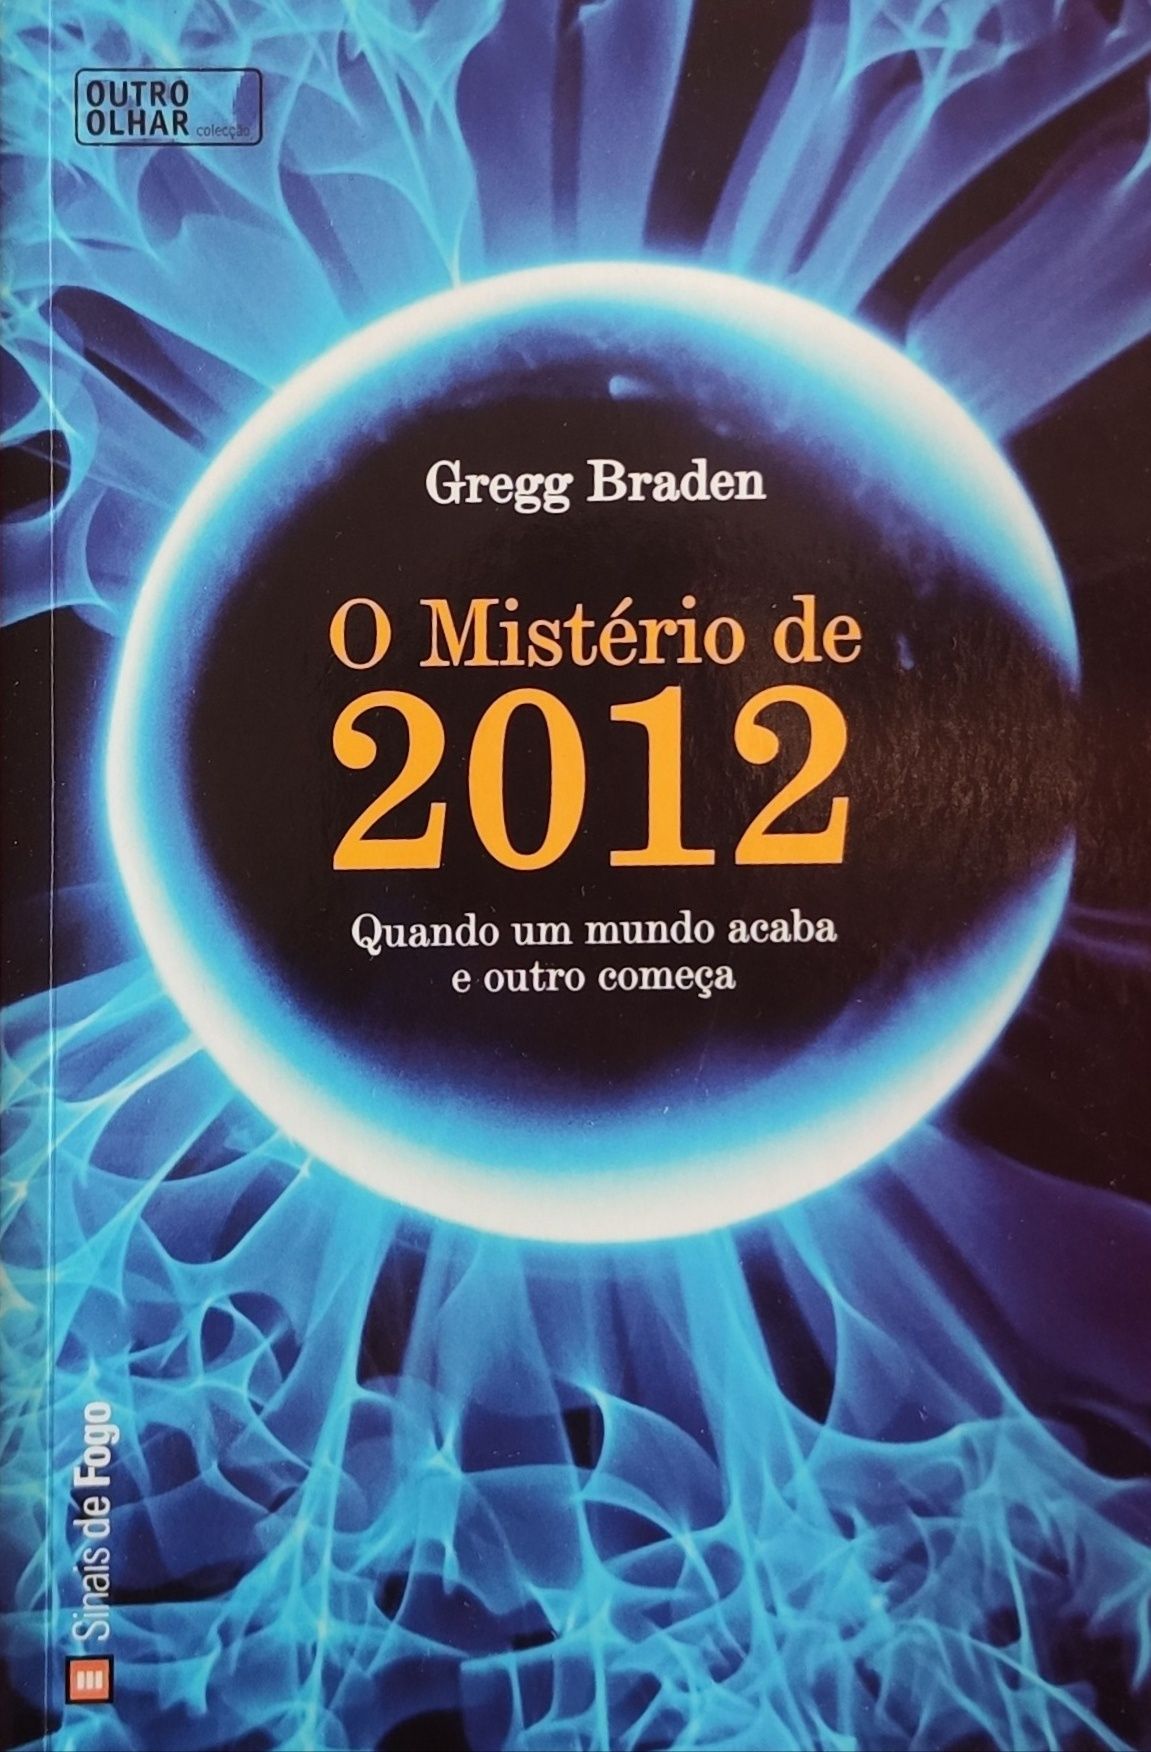 Livro "O mistério de 2012"